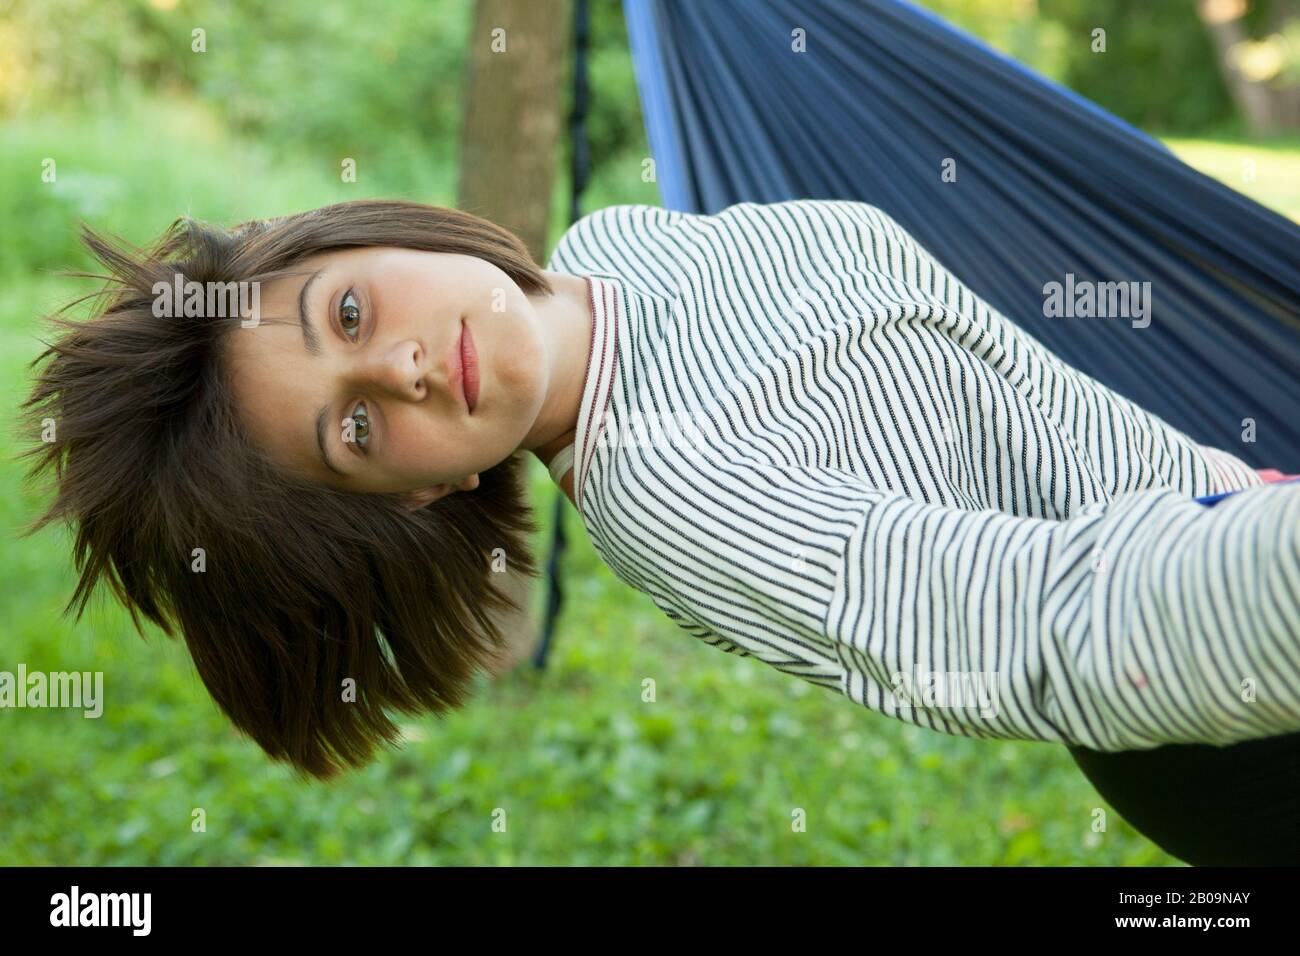 beautiful teen girl in hammock Stock Photo